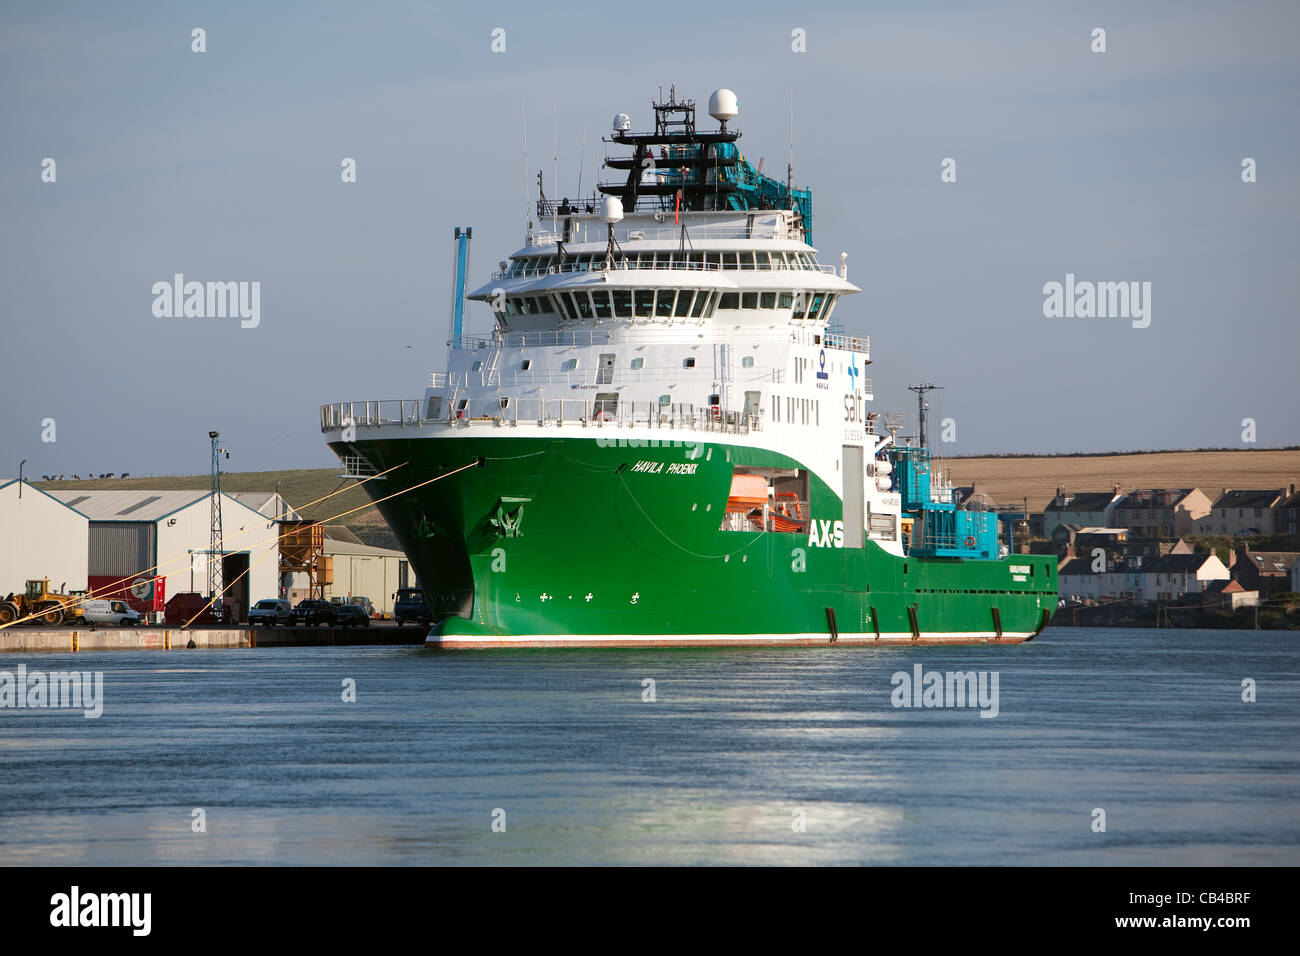 L'Havila Phoenix, un navire d'approvisionnement de l'industrie pétrolière, accosté à Montrose Angus Scotland UK Banque D'Images